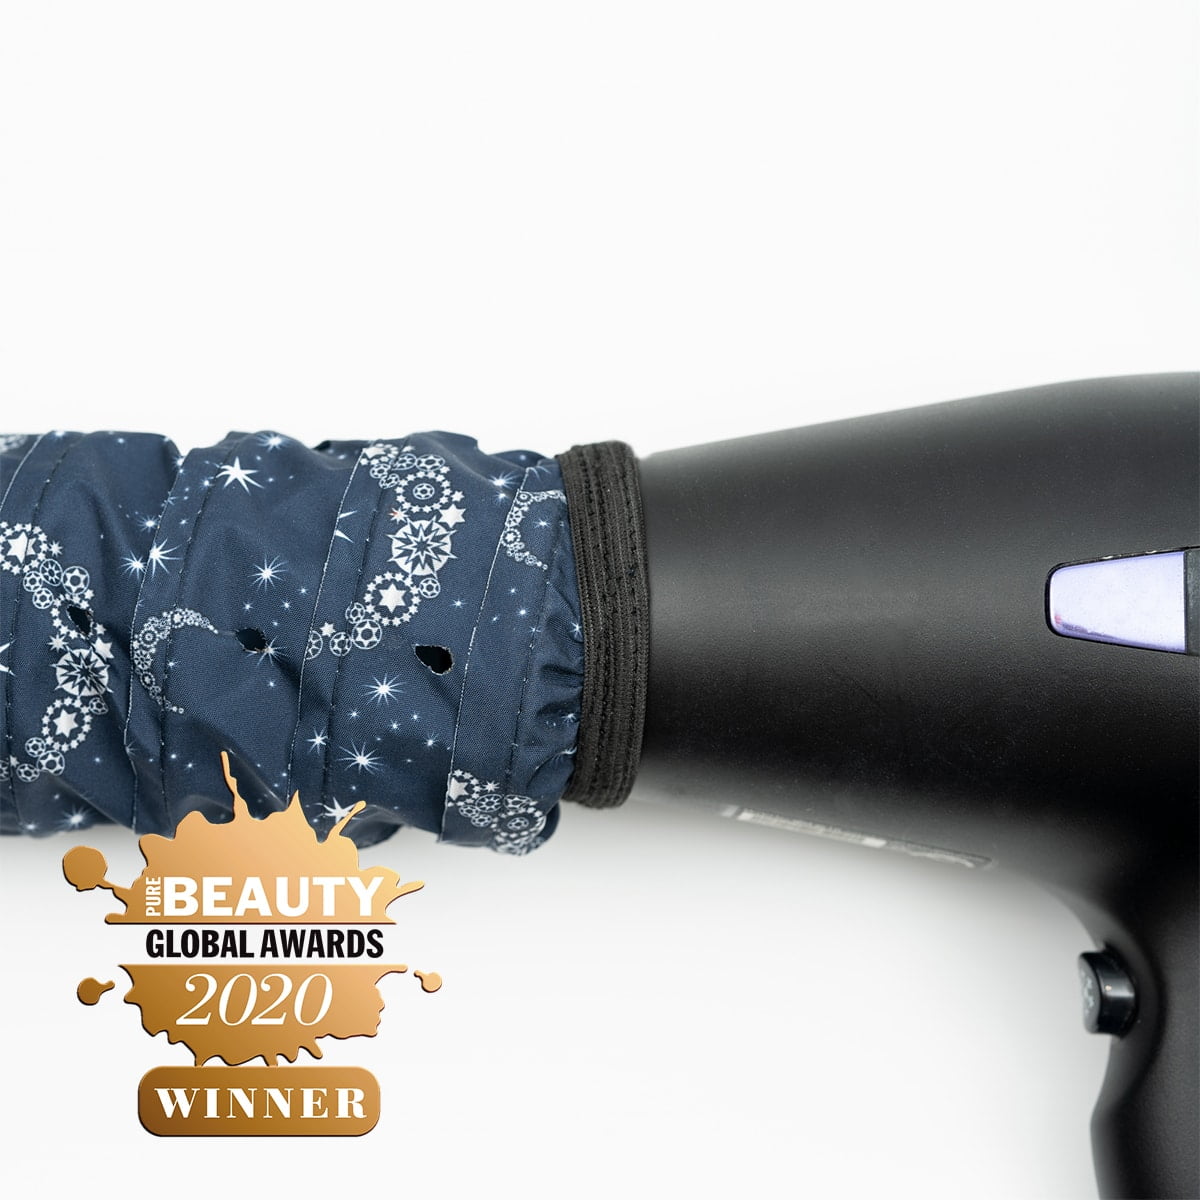 Accesorio Softhood® de la edición Bright as a Star: GANADOR de los premios Pure Beauty Awards 'Mejor nuevo producto para el cabello inclusivo' 2020